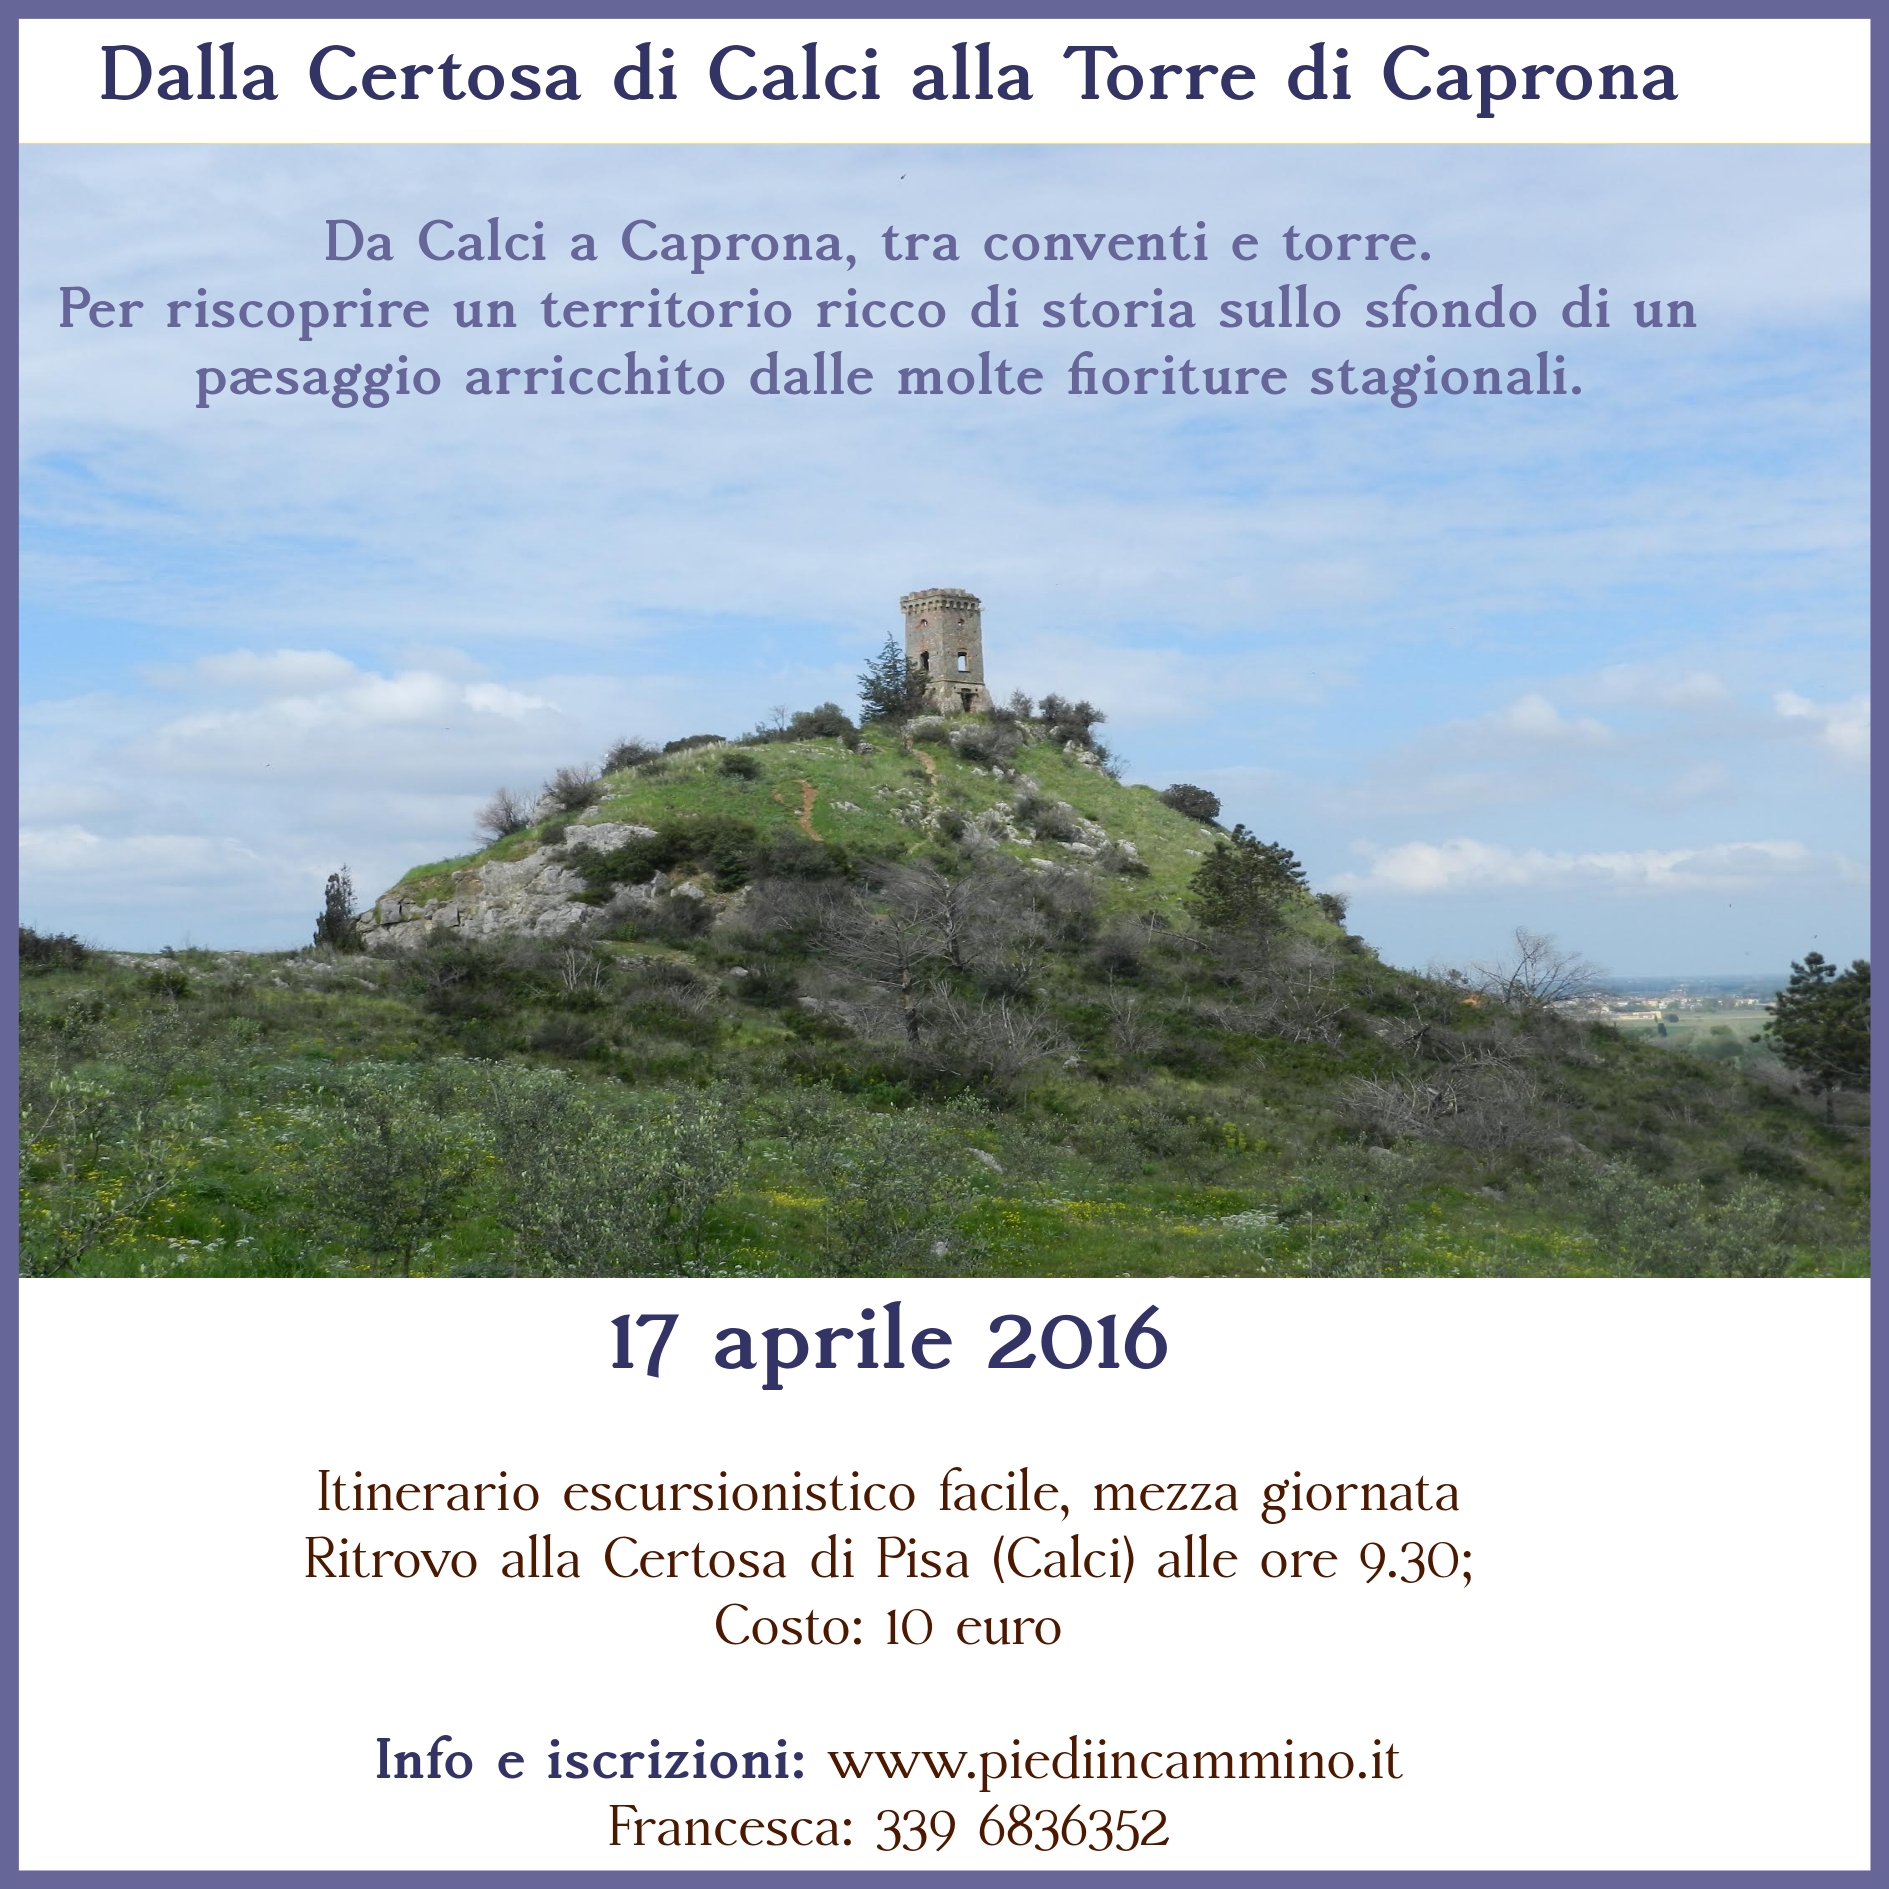 Dalla Certosa di Calci alla Torre di Caprona